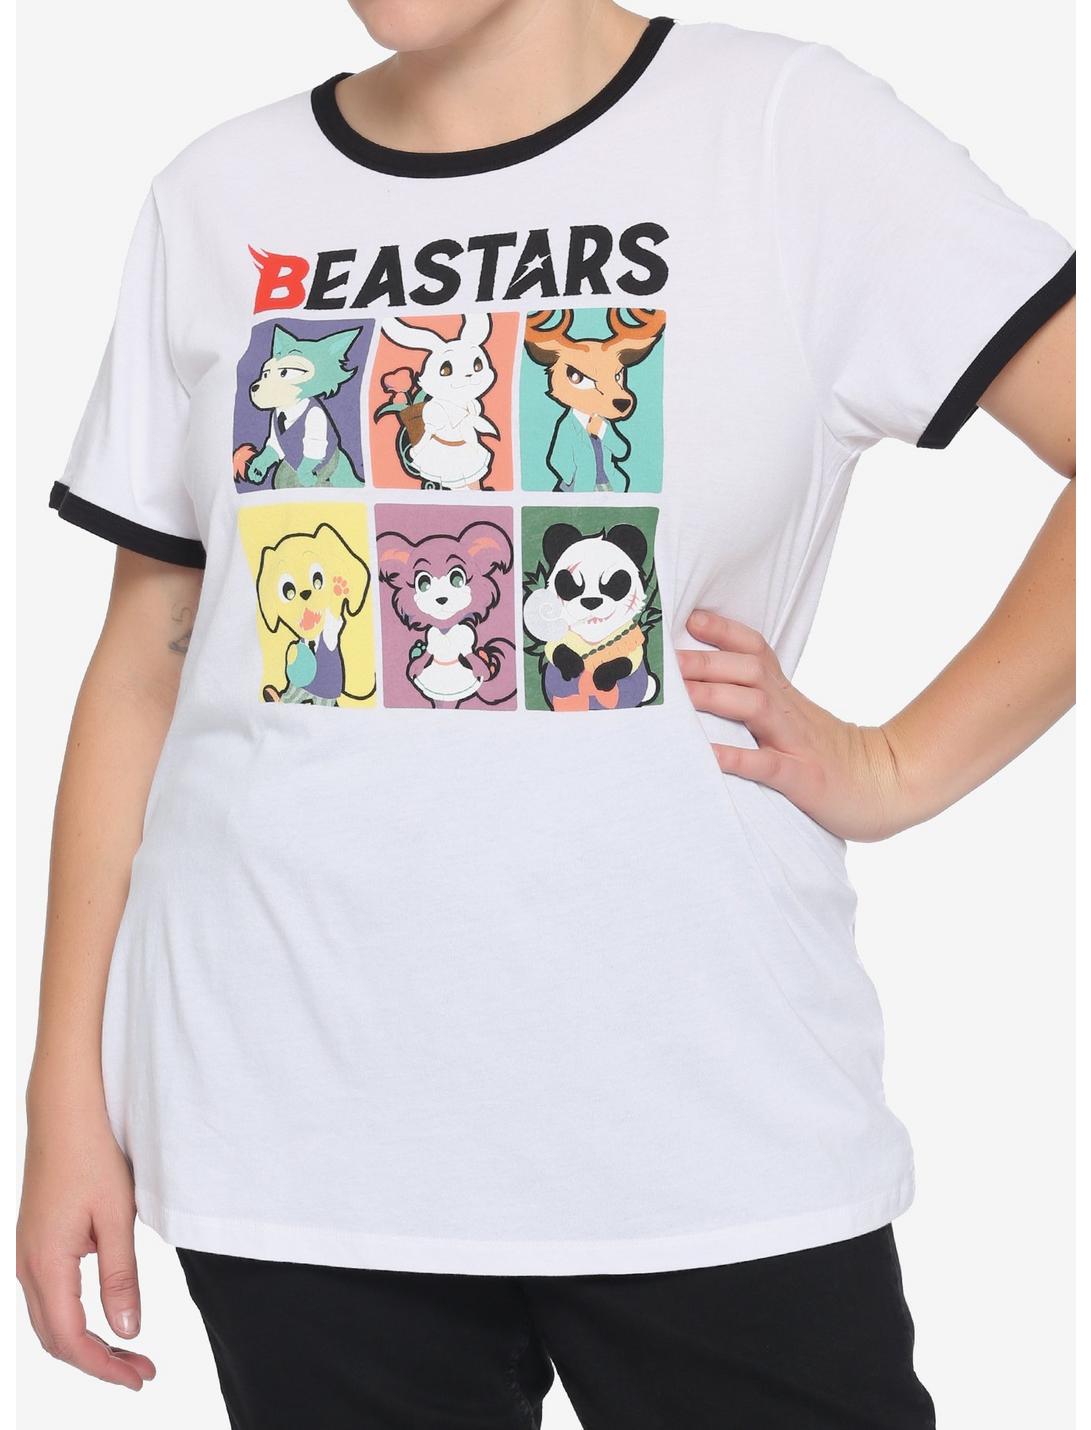 Beastars Chibi Girls Ringer T-Shirt Plus Size, MULTI, hi-res